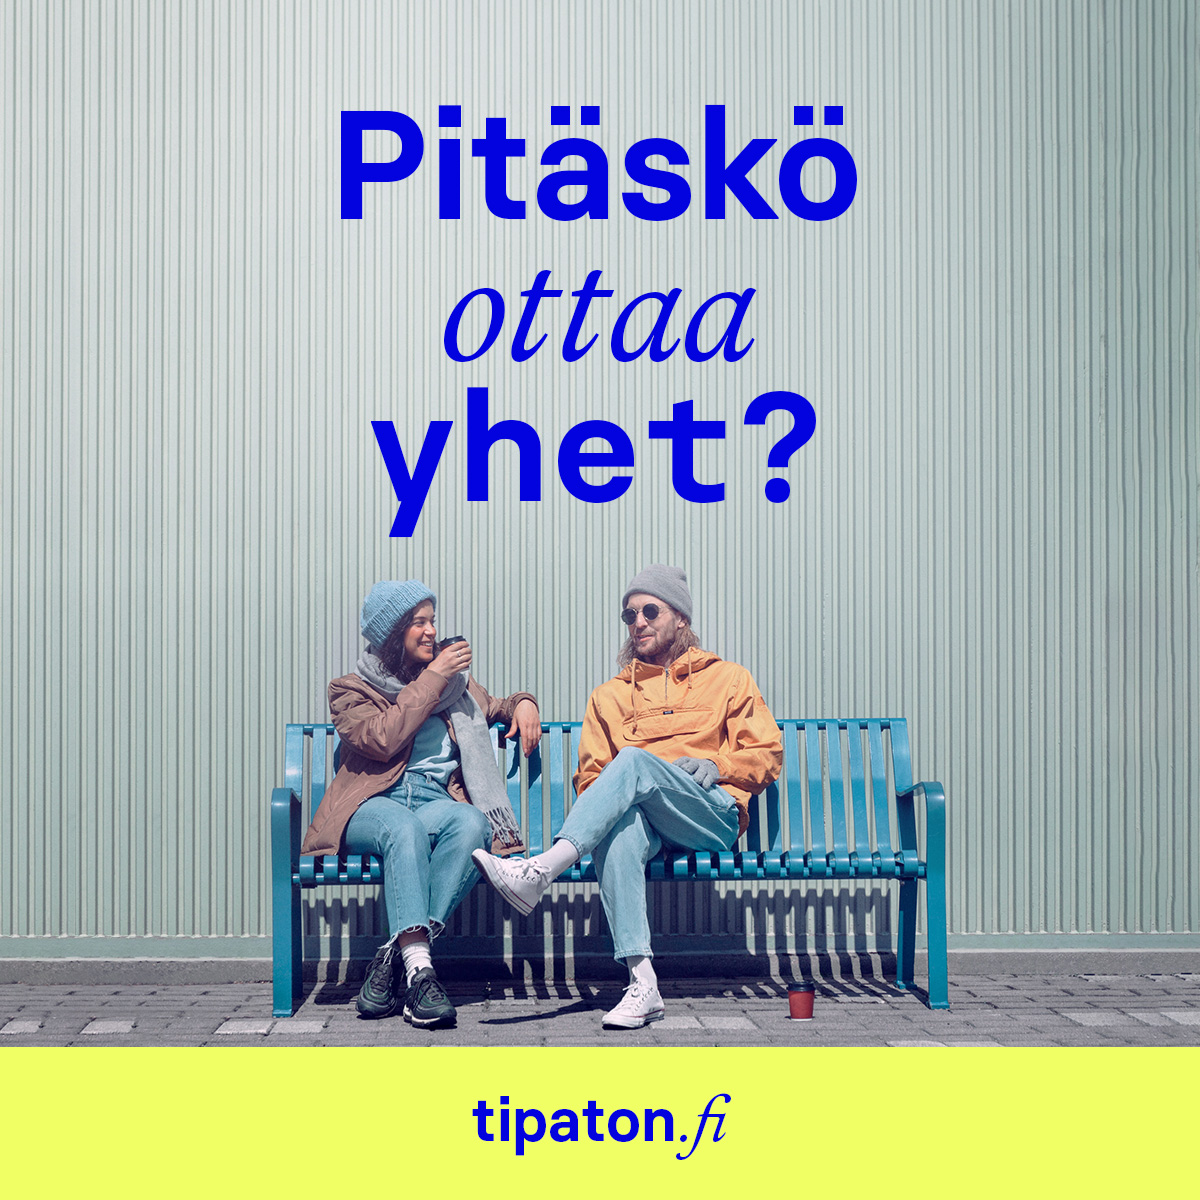 Kaksi nuorta istuu penkillä ja juo kahvia. Teksti: "Pitäskö ottaa yhet?" tipaton.fi